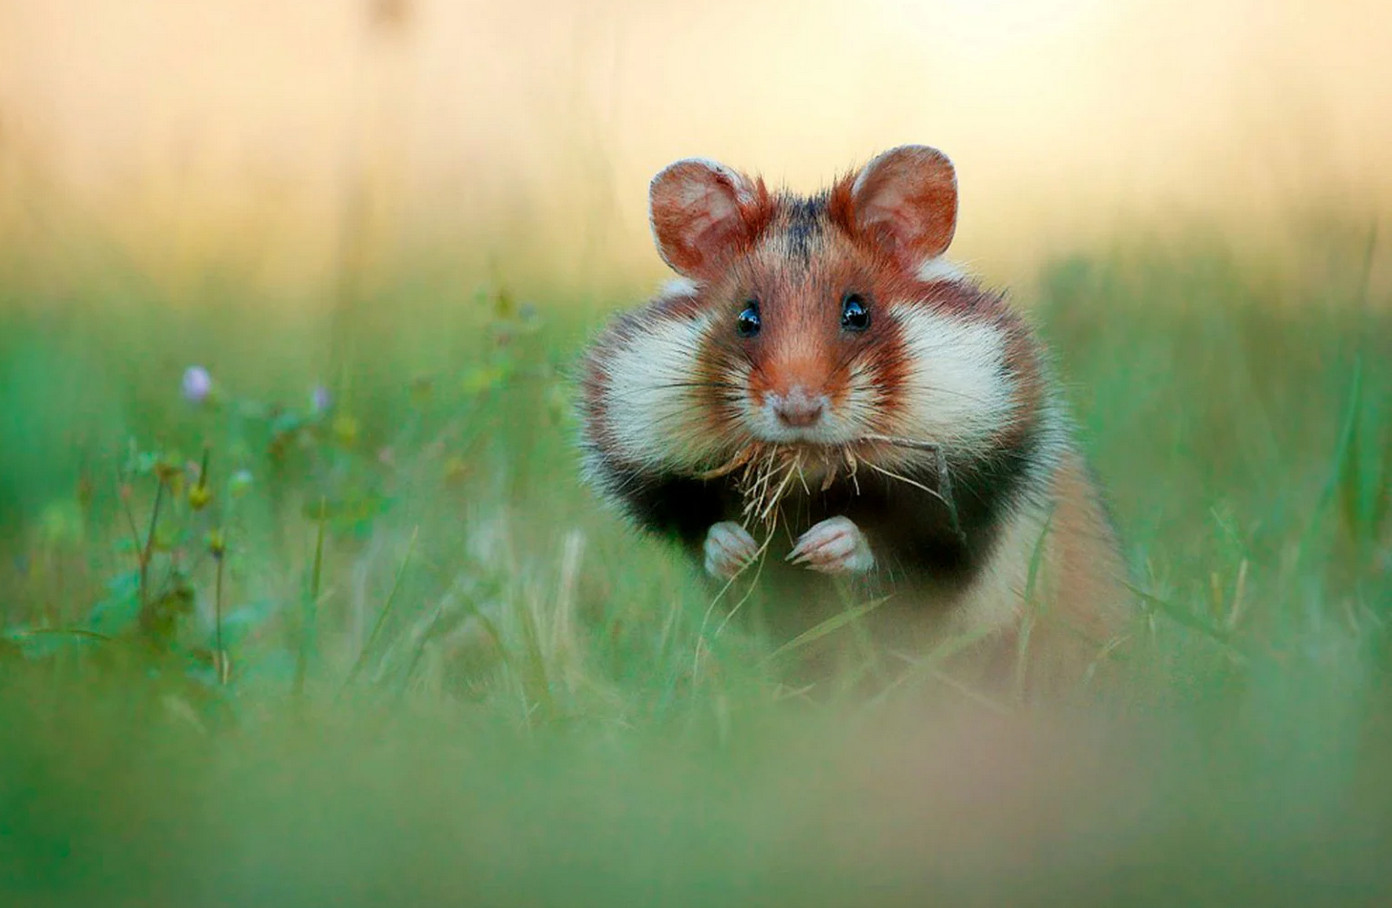 Bộ Ảnh Đáng Yêu Của Chuột Hamster Hoang Dã Sẽ Khiến Bạn Xao Xuyến Hết Buổi  Chiều